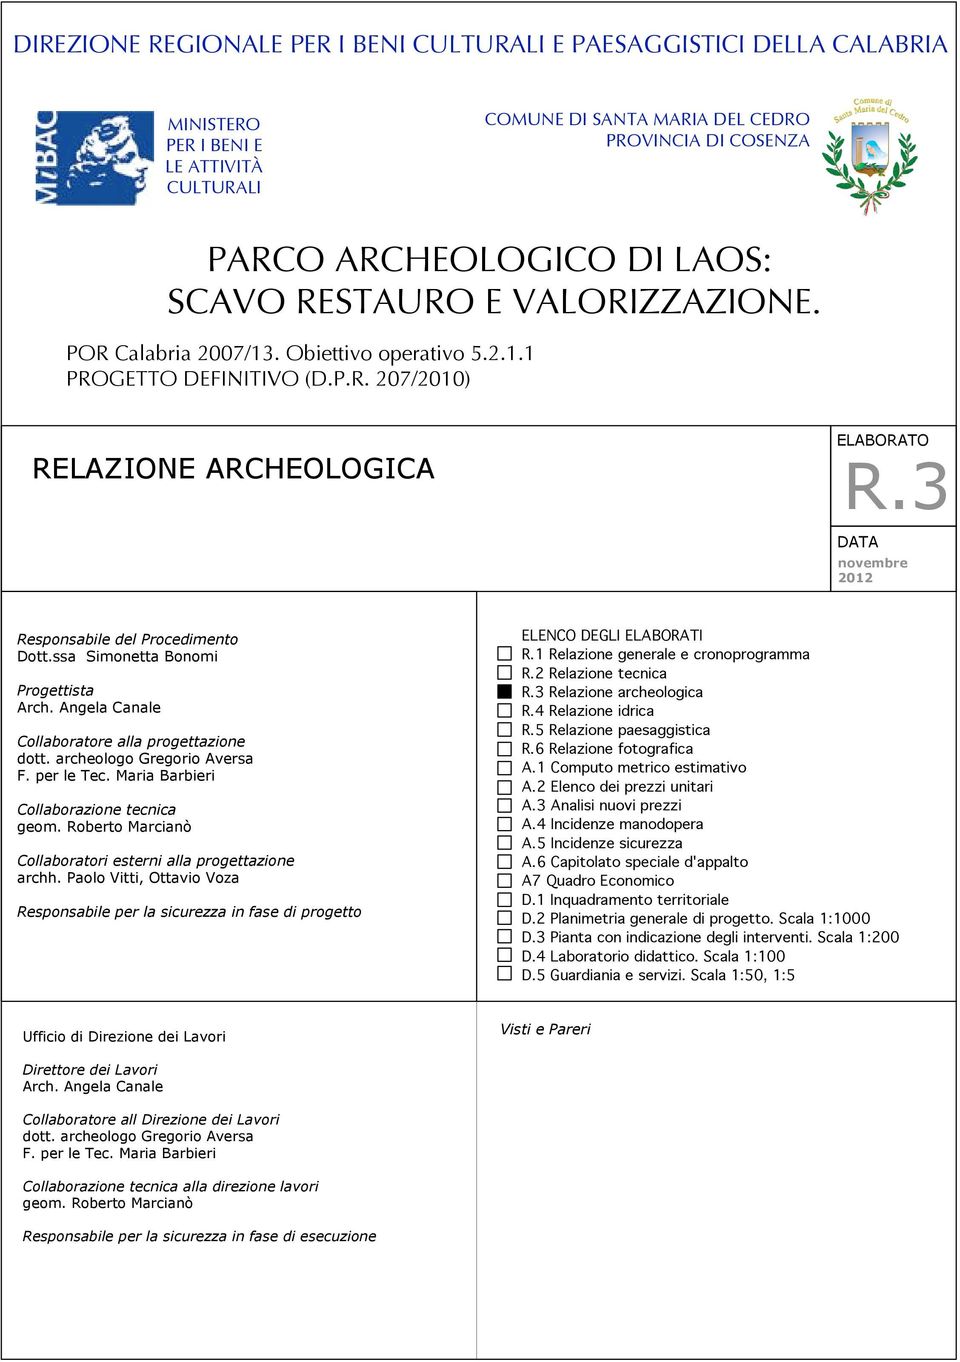 3 DATA novembre 2012 Responsabile del Procedimento Dott.ssa Simonetta Bonomi Progettista Arch. Angela Canale Collaboratore alla progettazione dott. archeologo Gregorio Aversa F. per le Tec.